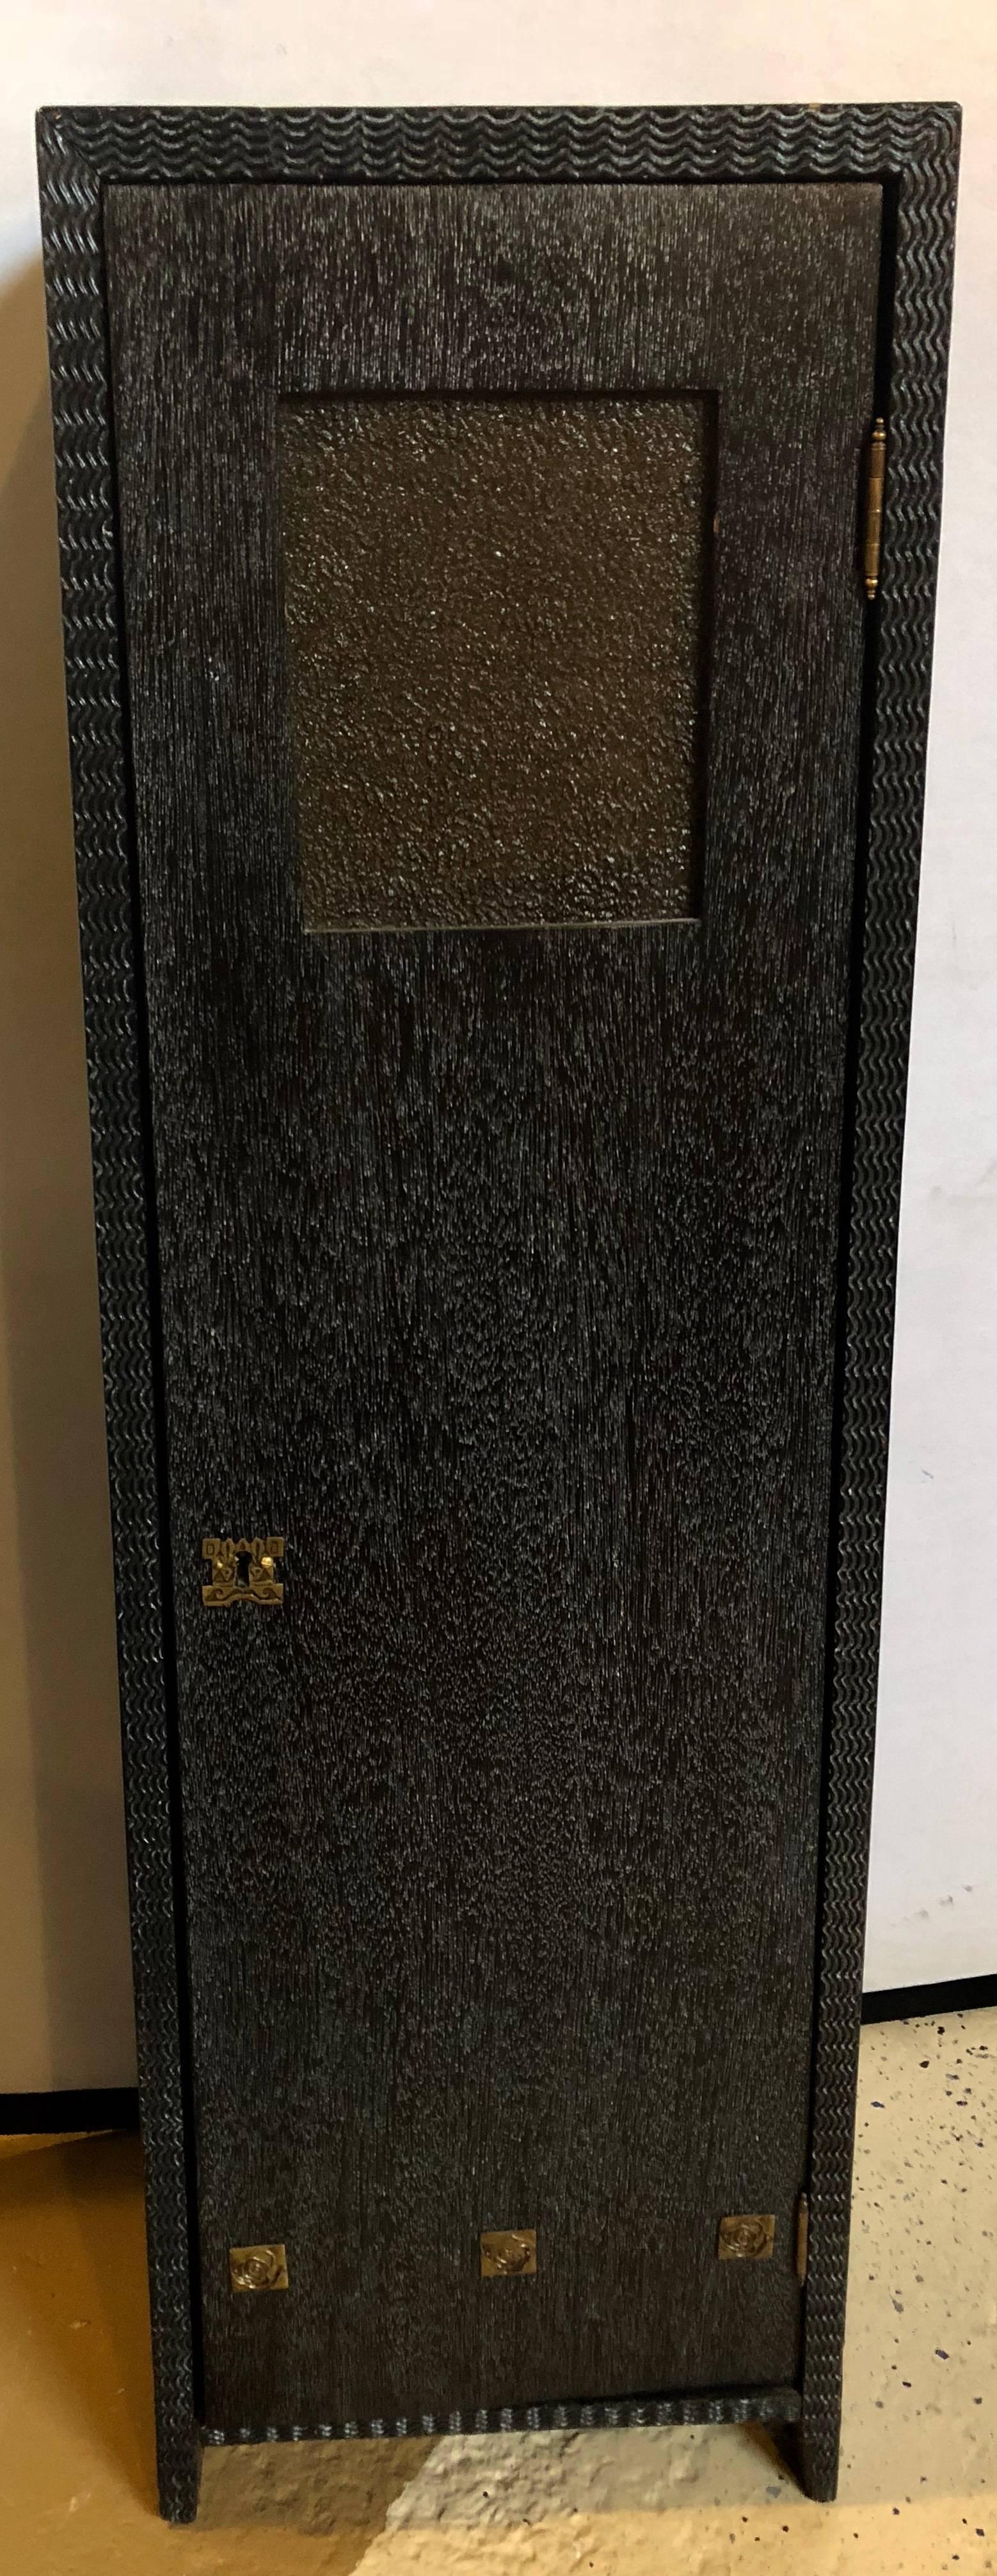 Piédestaux Art déco, noirs texturés, chêne ébénisé, métal doré, années 1930, Christies en vente 10